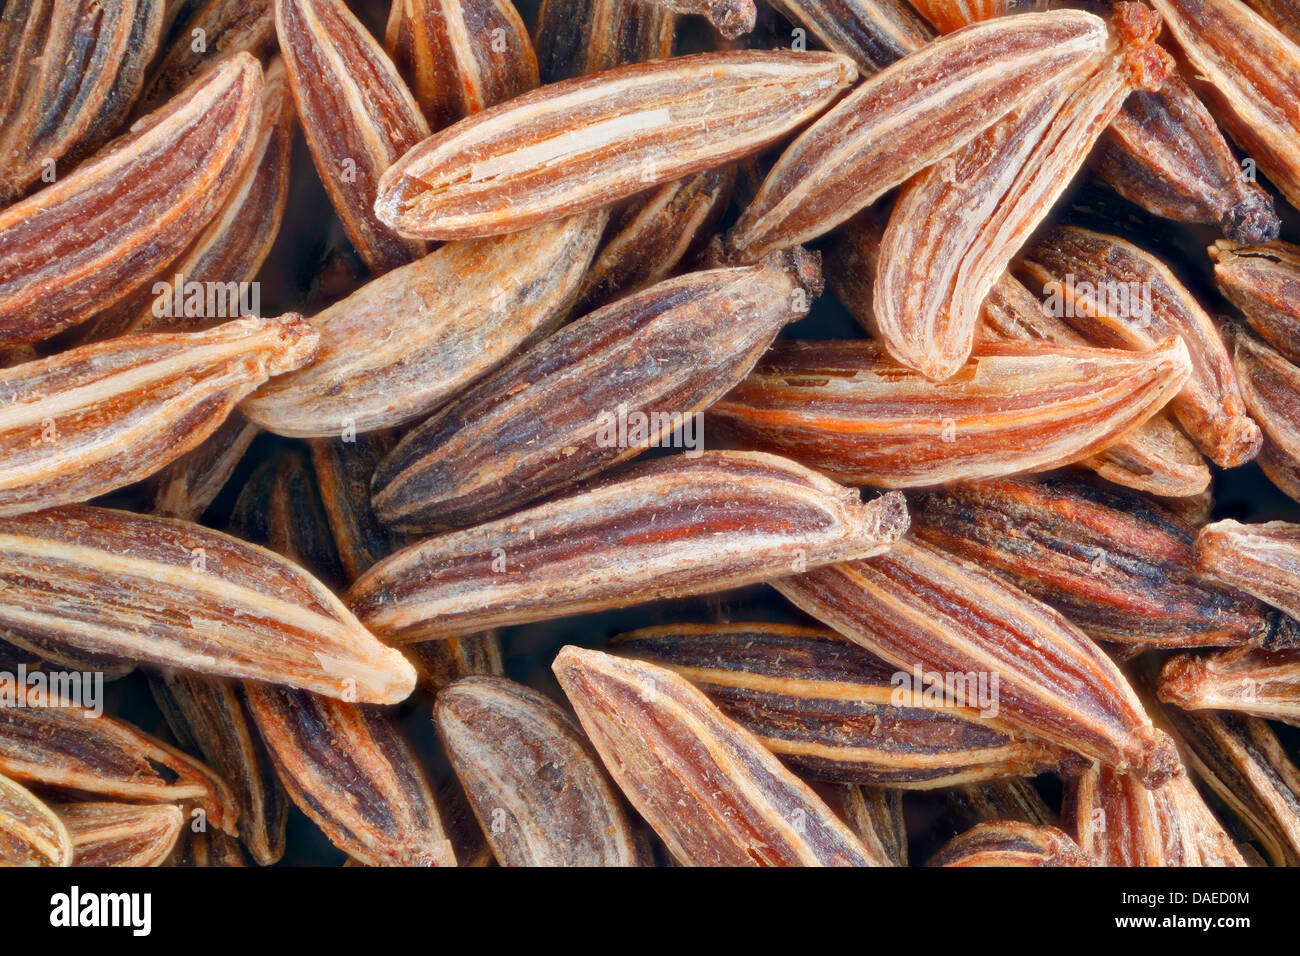 common caraway (Carum carvi), caraway fruit close-up Stock Photo